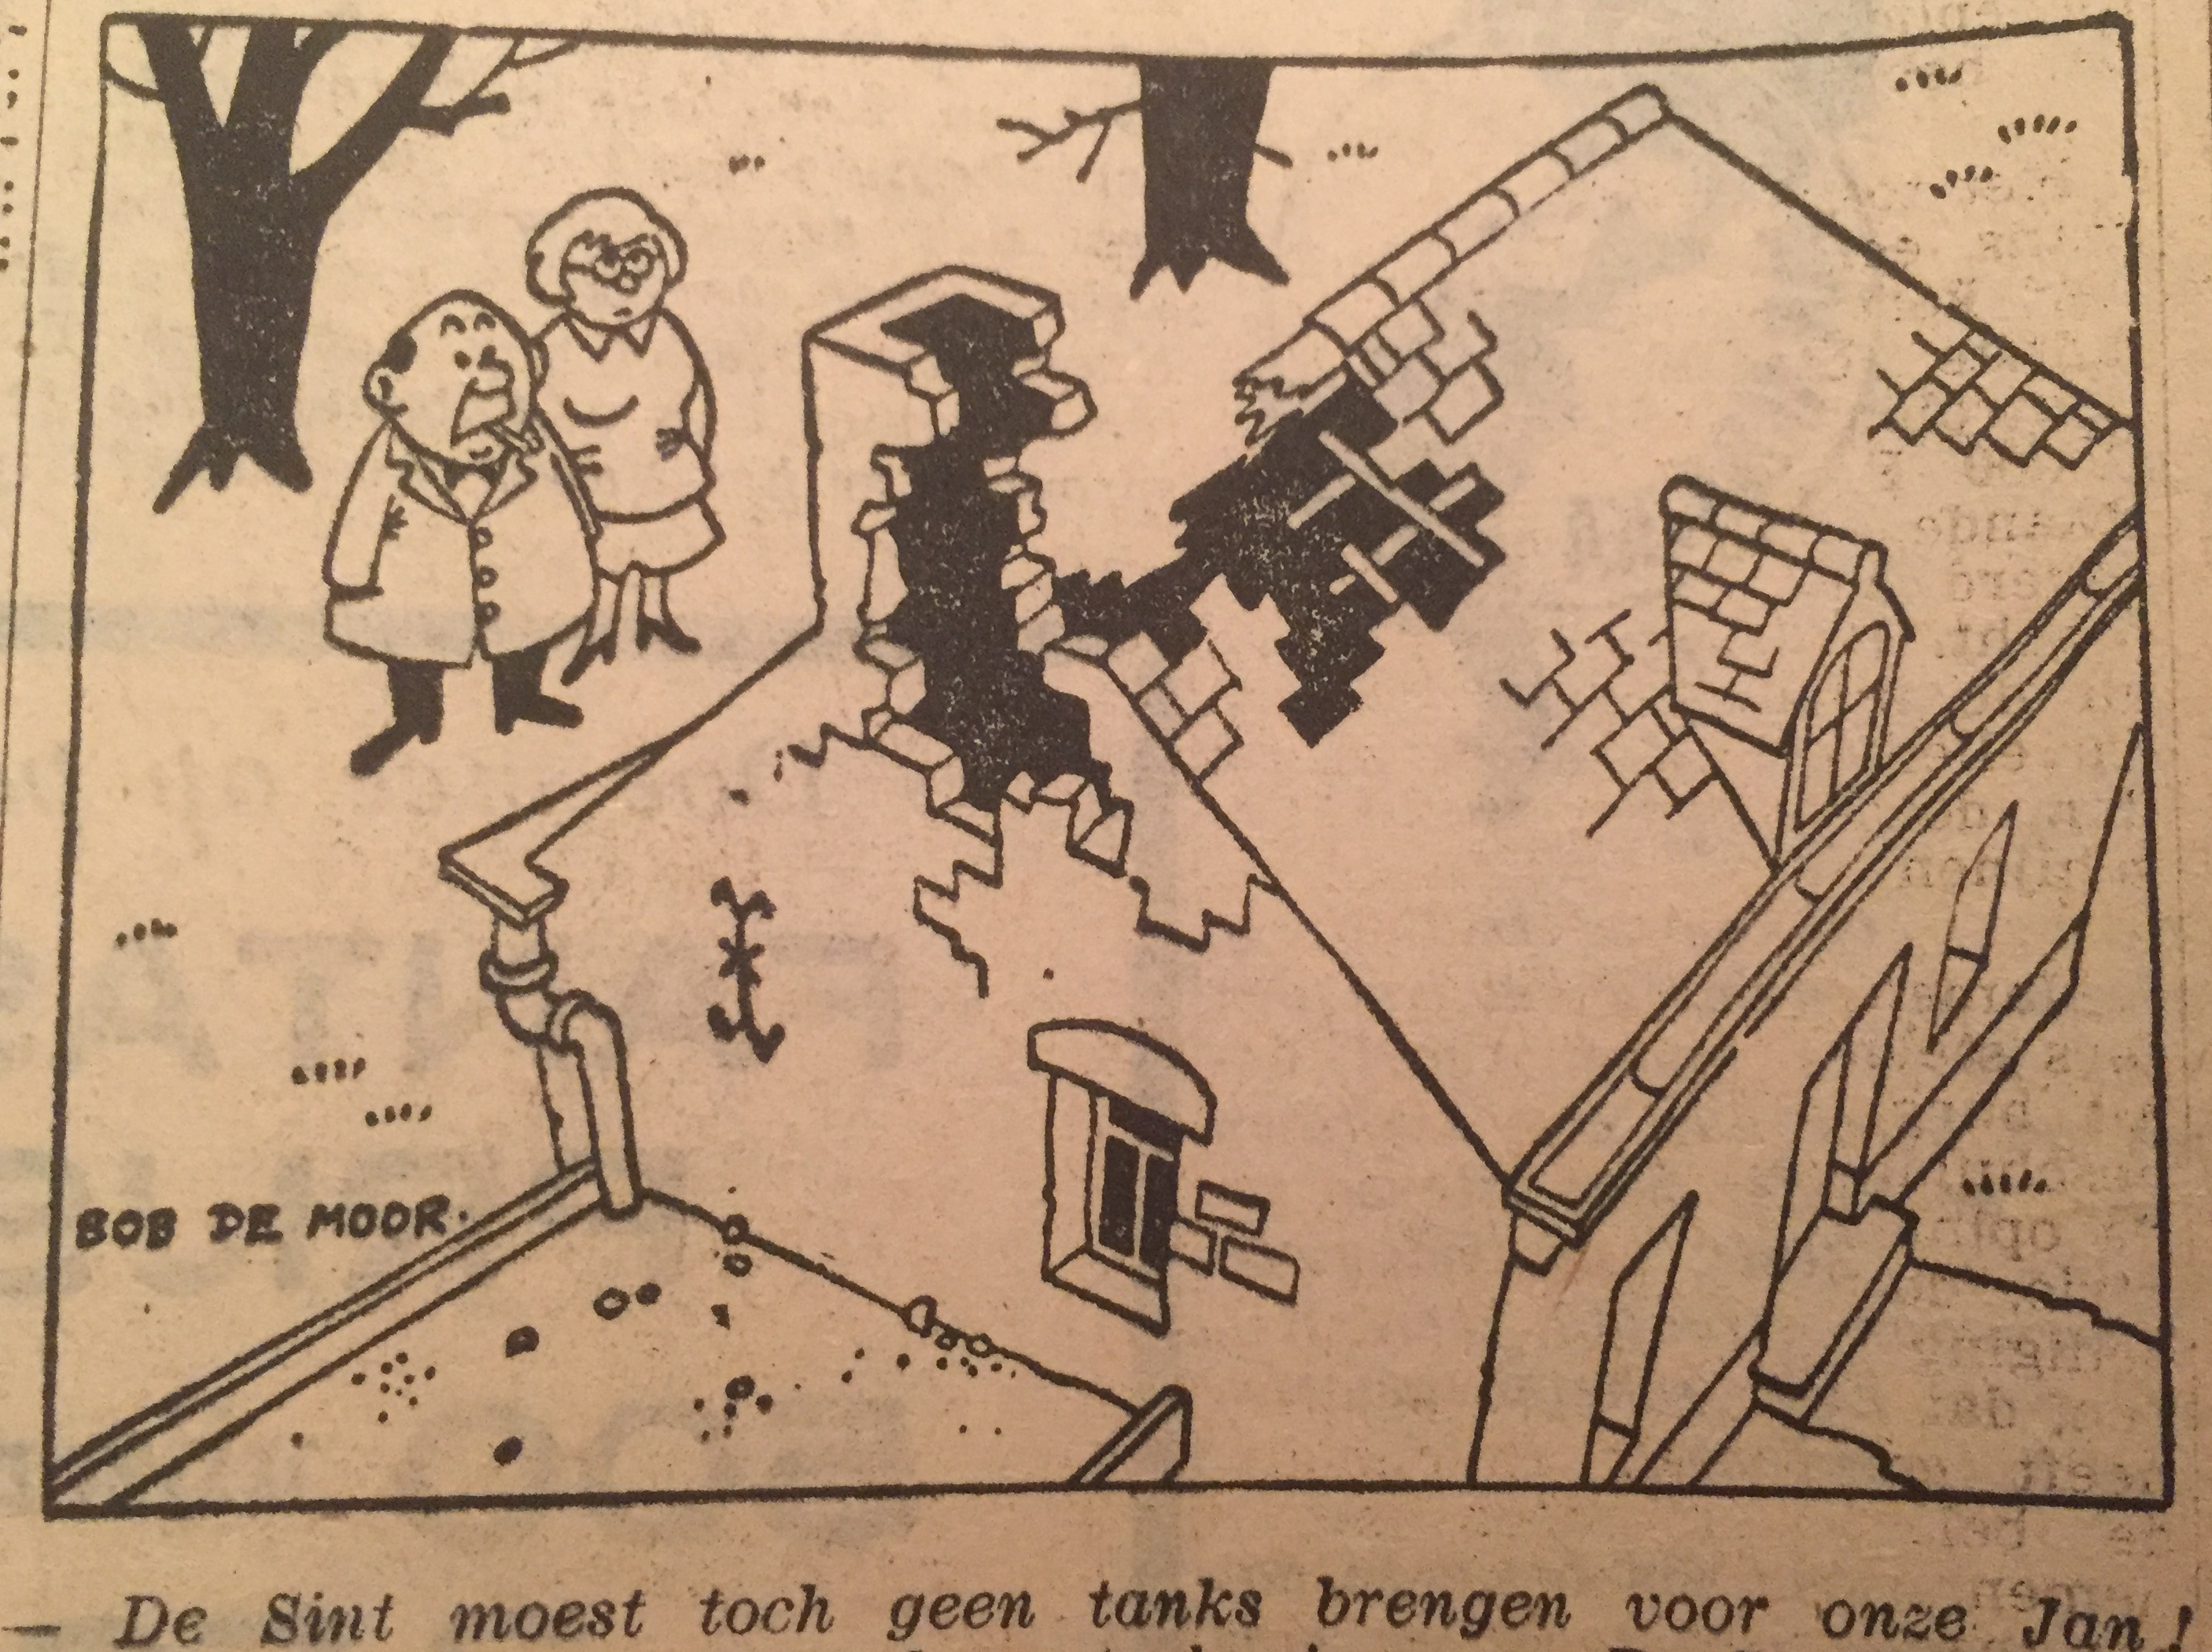 2 more 'Help Sinterklaas' cartoons surface